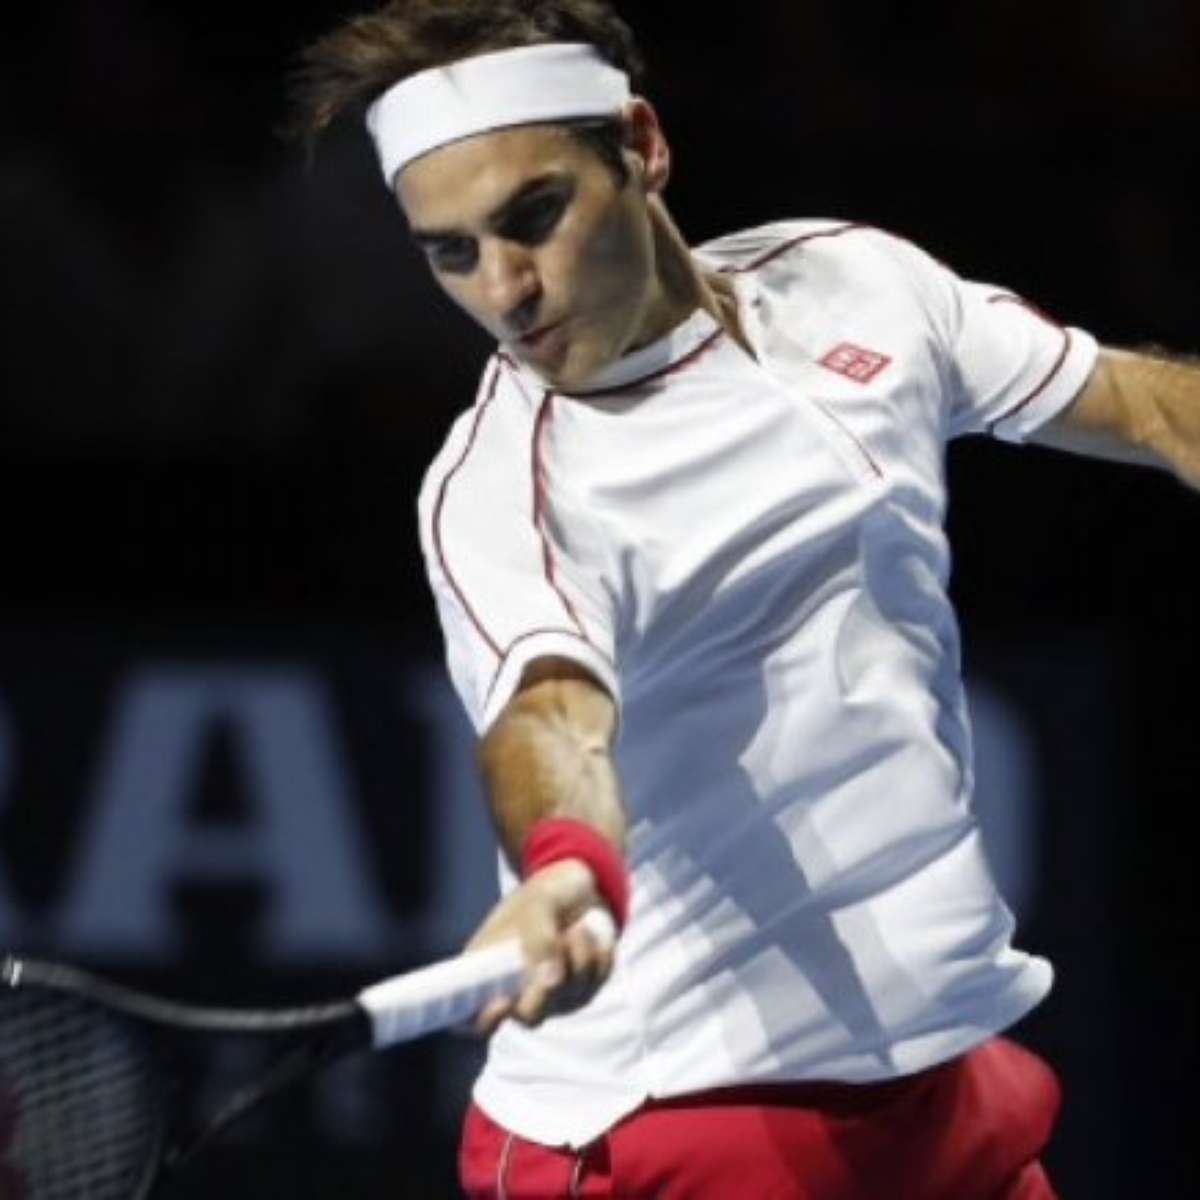 Torneio de Basileia anuncia presença de Roger Federer